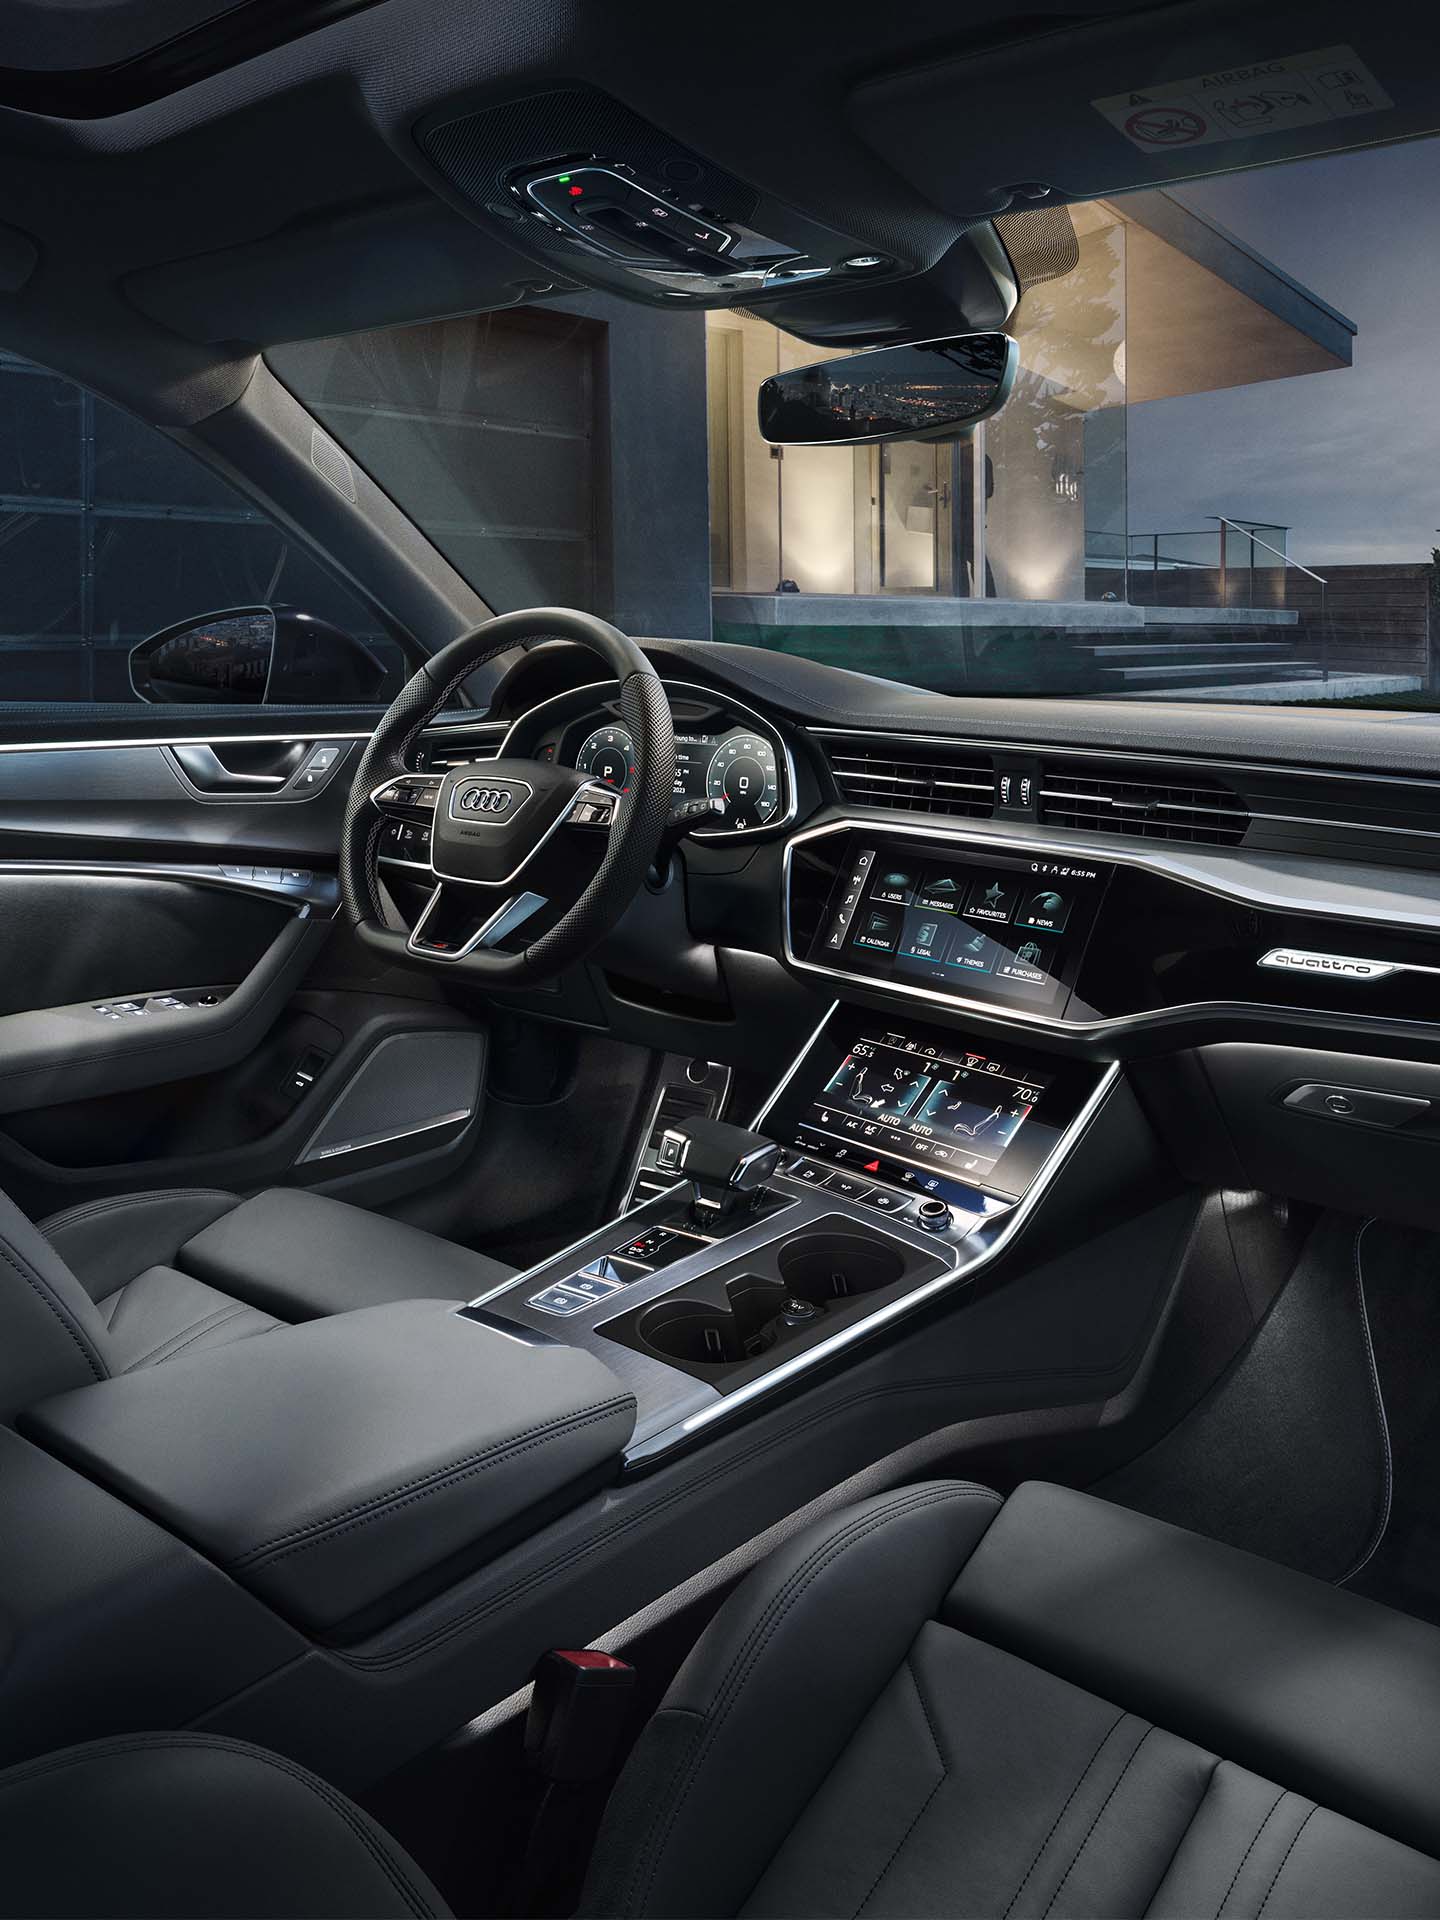 Visualizzazione del cockpit con i sistemi MMI Audi.